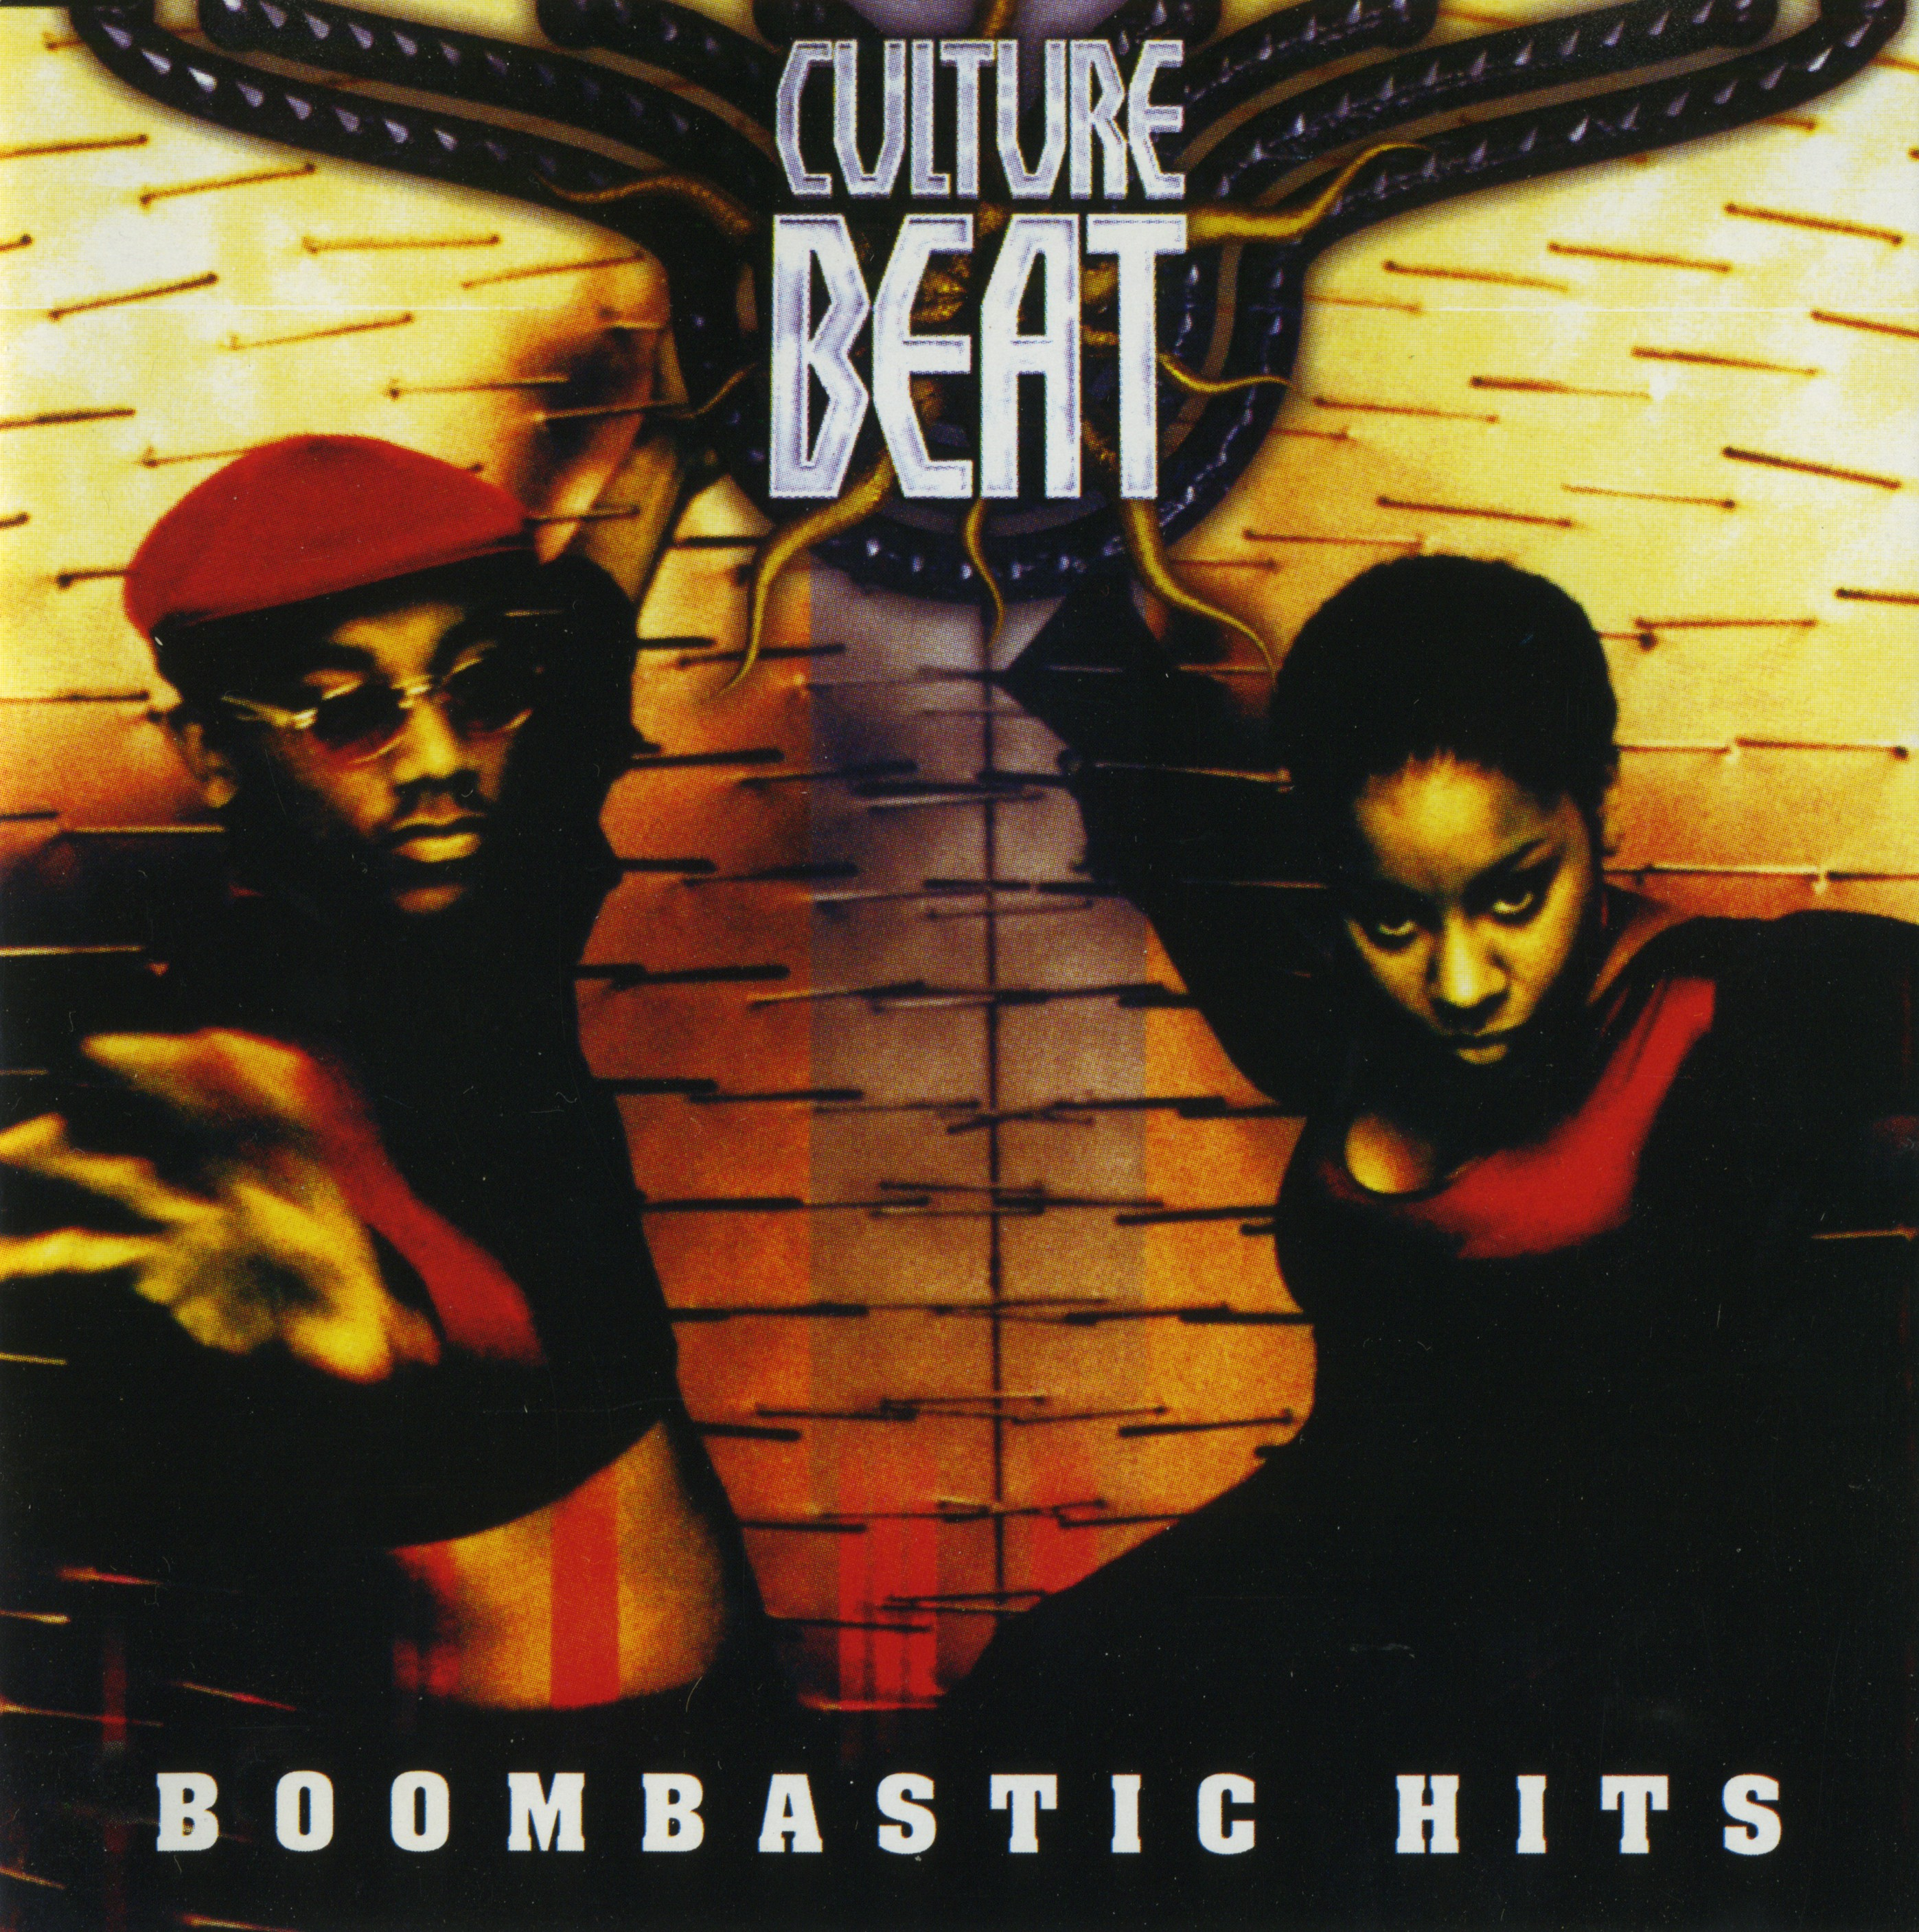 Boombastic Hits (Culture Beat) - GetSongBPM